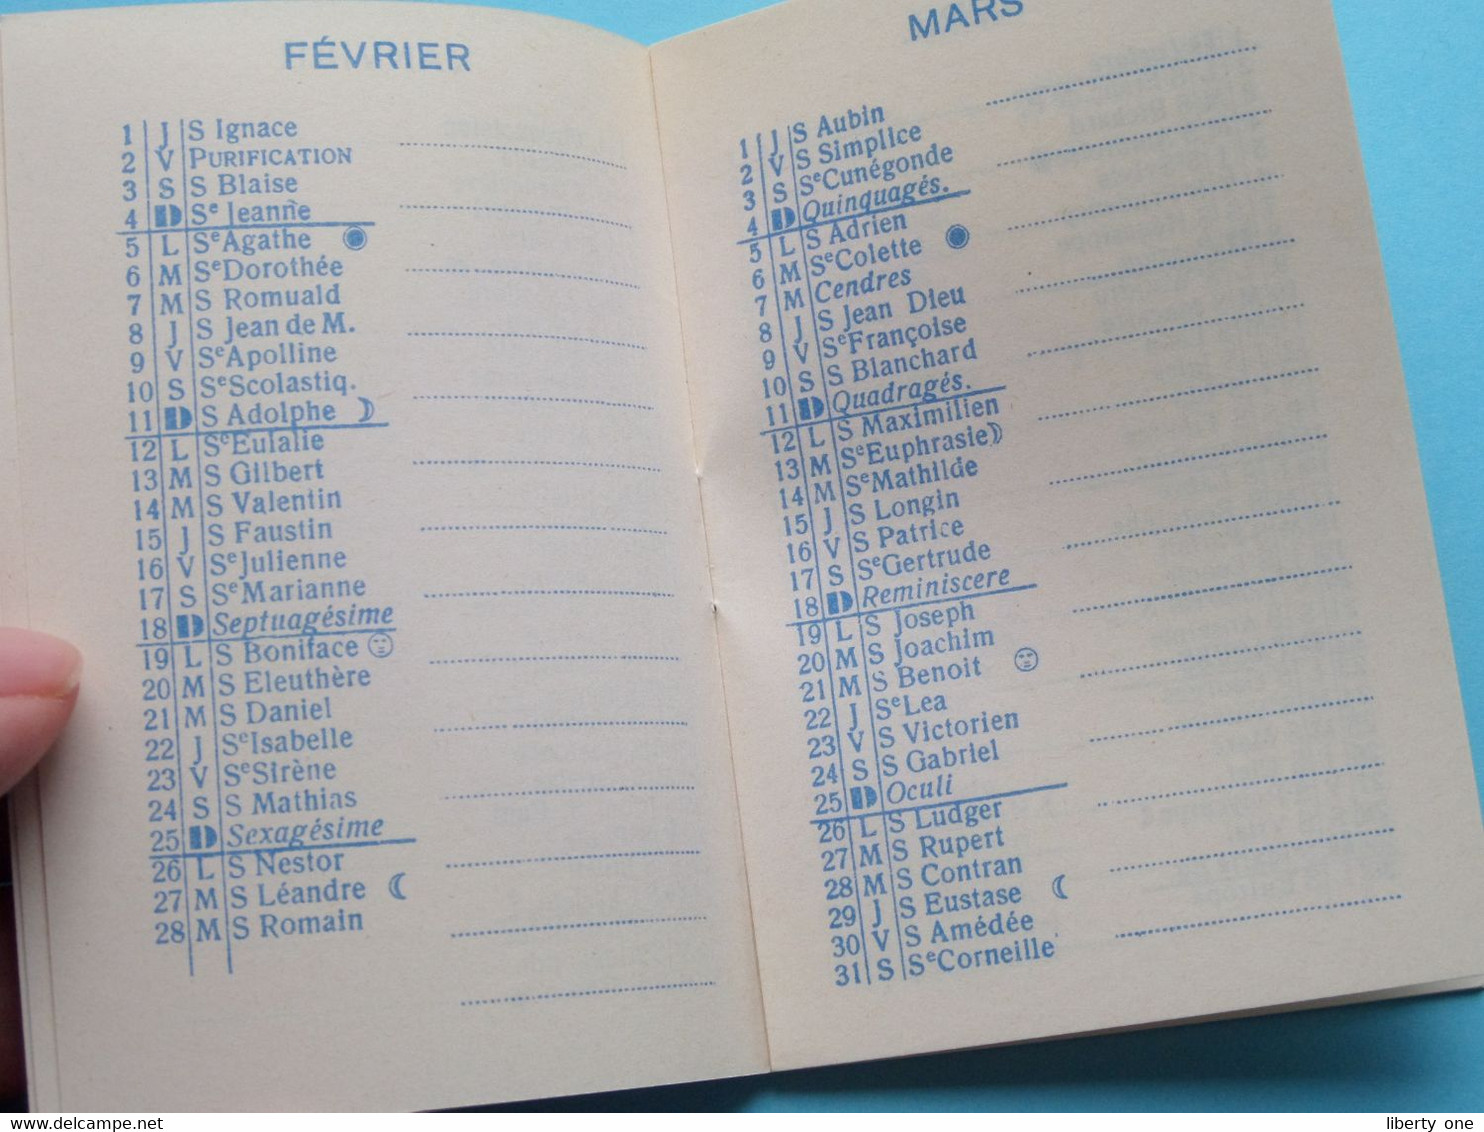 1962 Agenda Miniature > Publi BISTER Moutarde Dijon ( Zie / Voir Photo ) ! - Petit Format : 1961-70